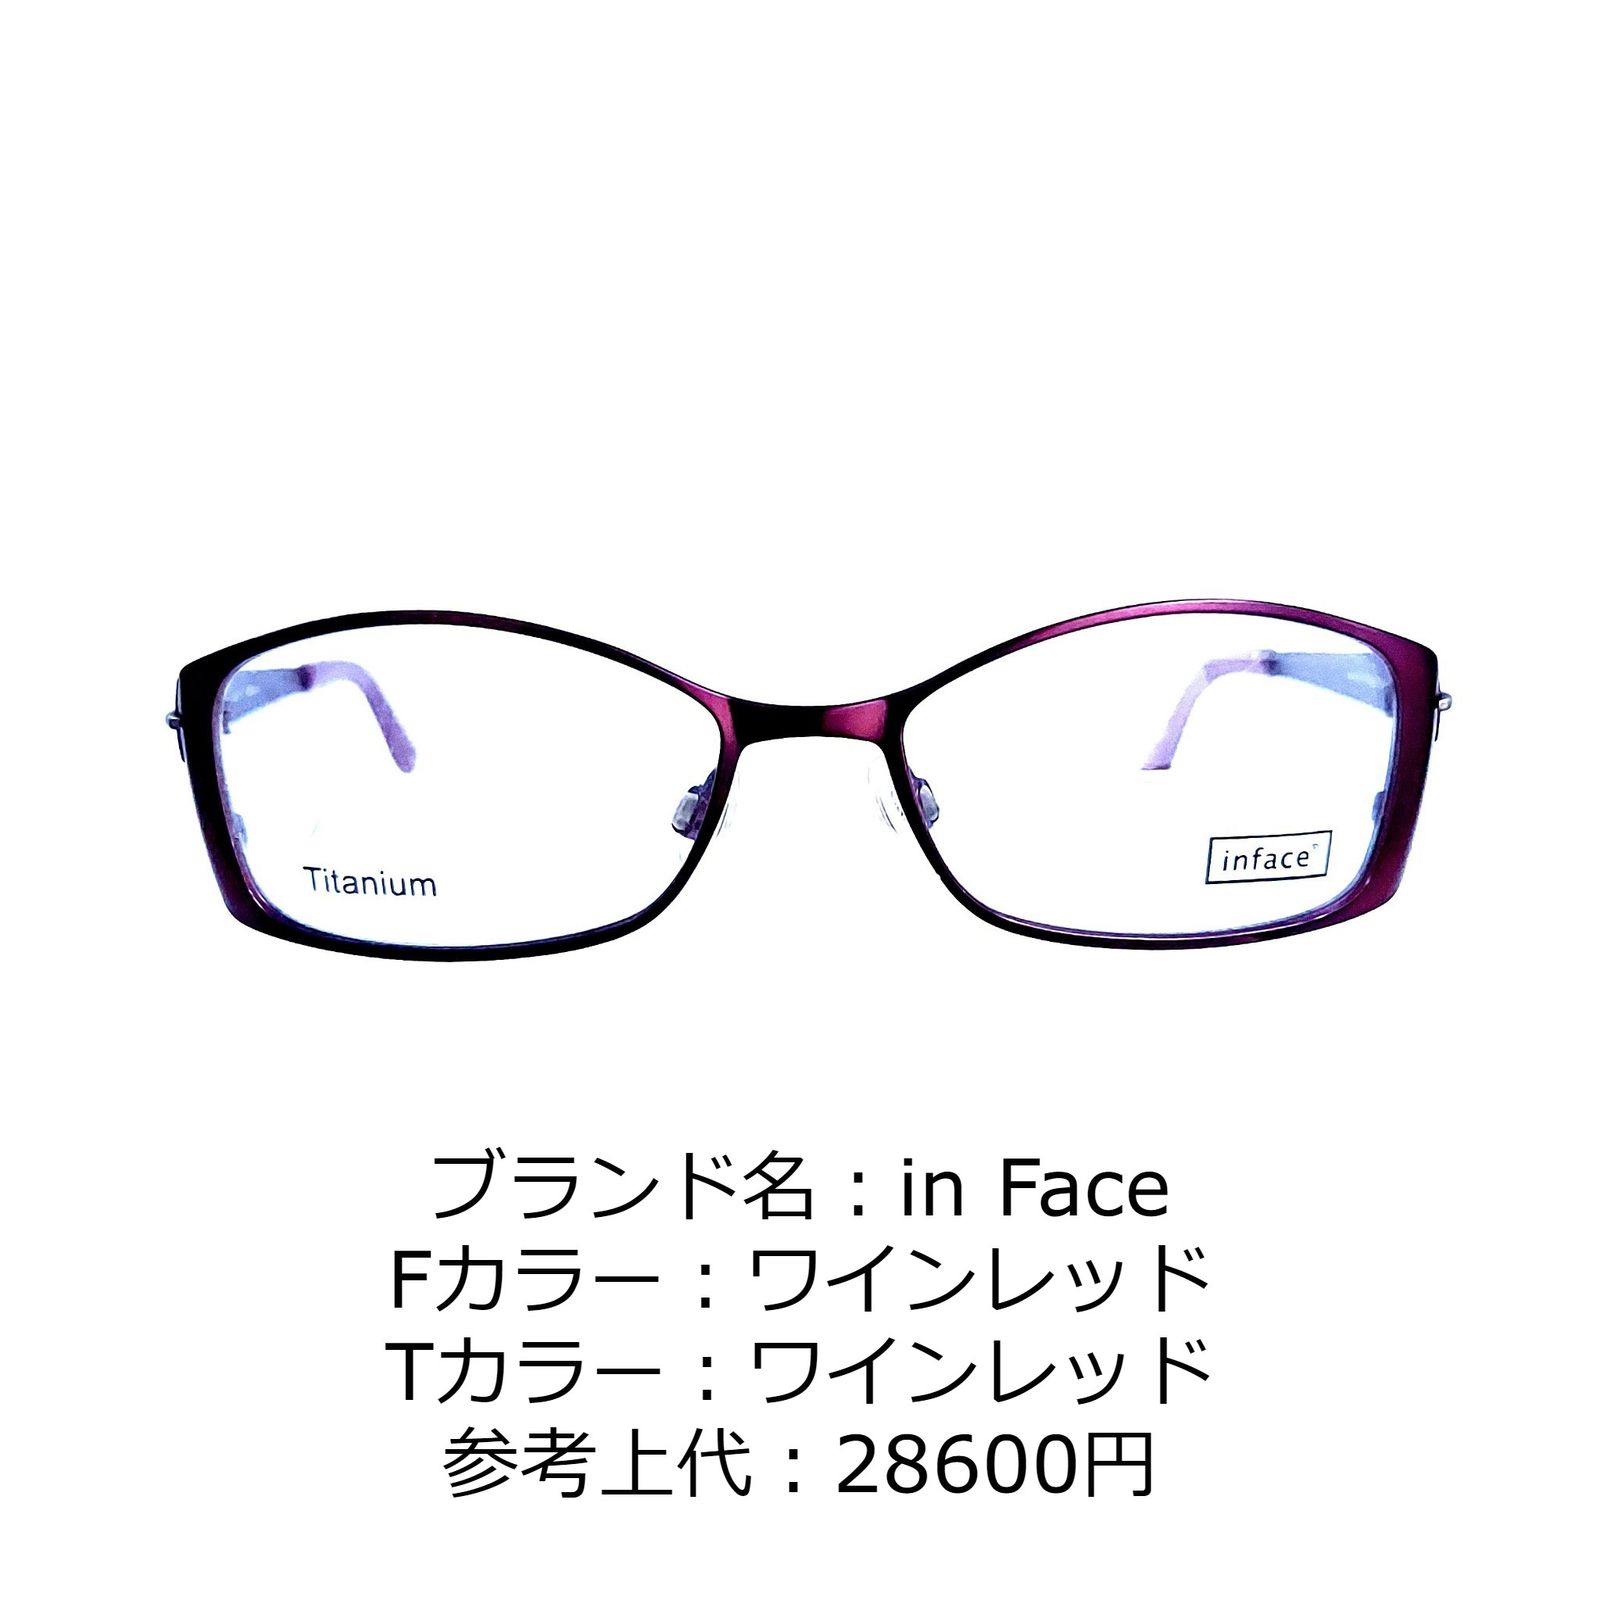 No.1148-メガネ in Face【フレームのみ価格】 - スッキリ生活専門店